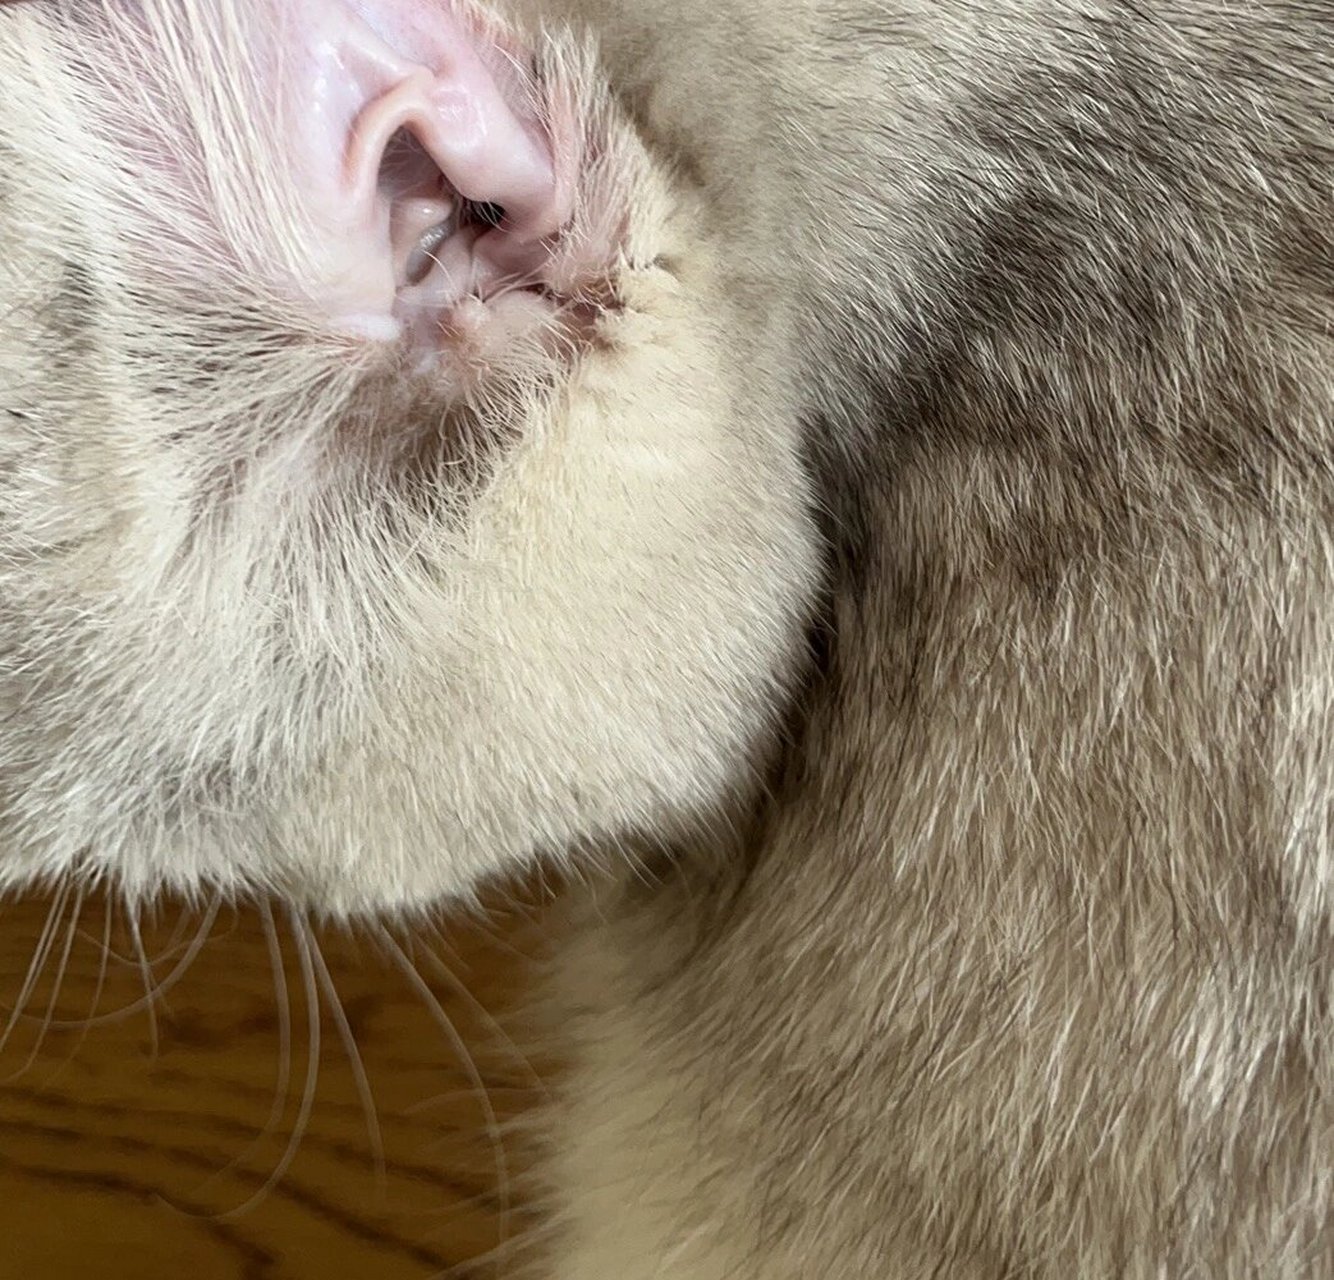 猫咪鼻子变白了 是不是贫血呀 补血肝精喂了还是发白